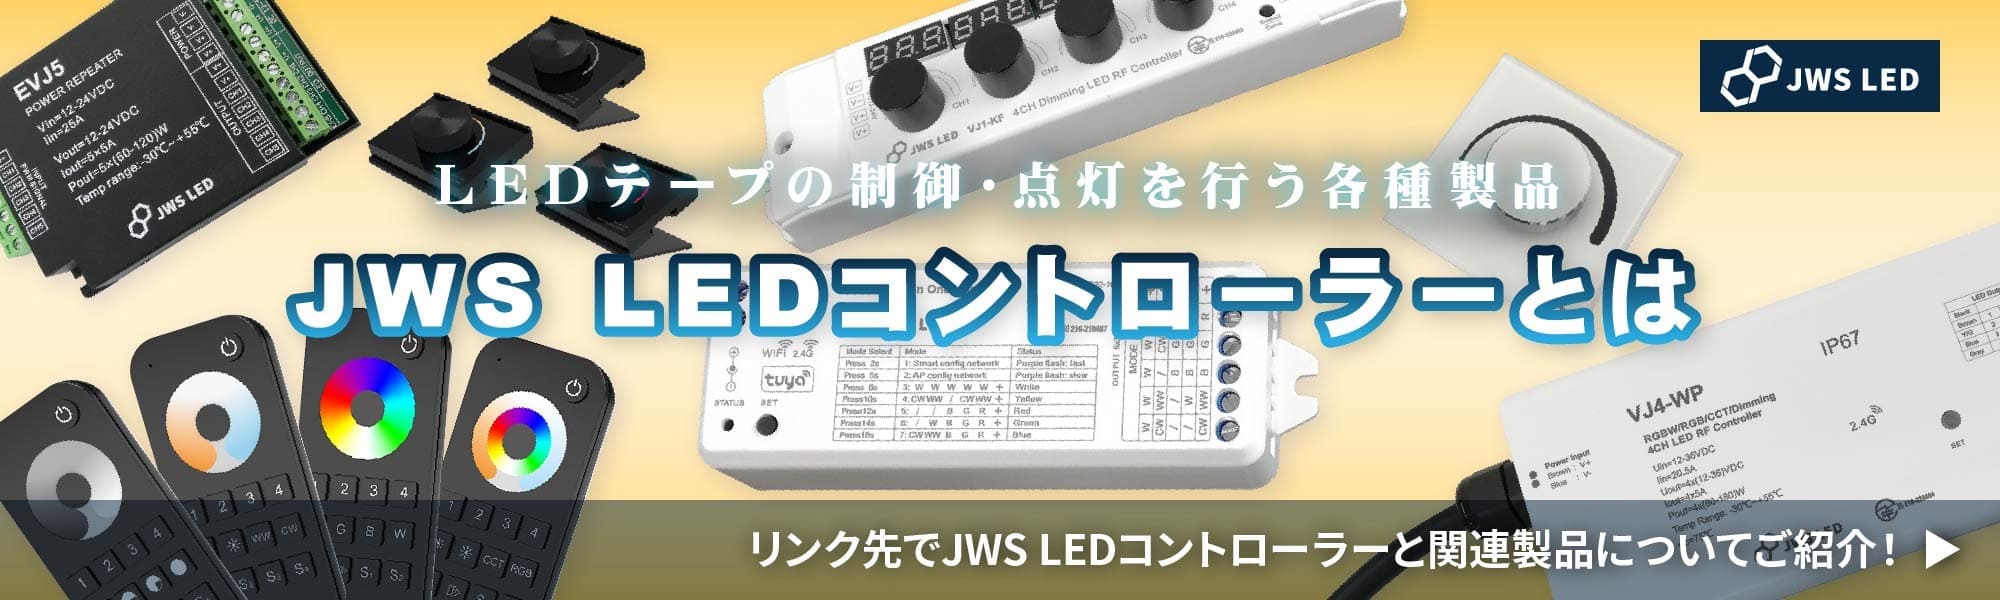 JWS LEDコントローラーとは